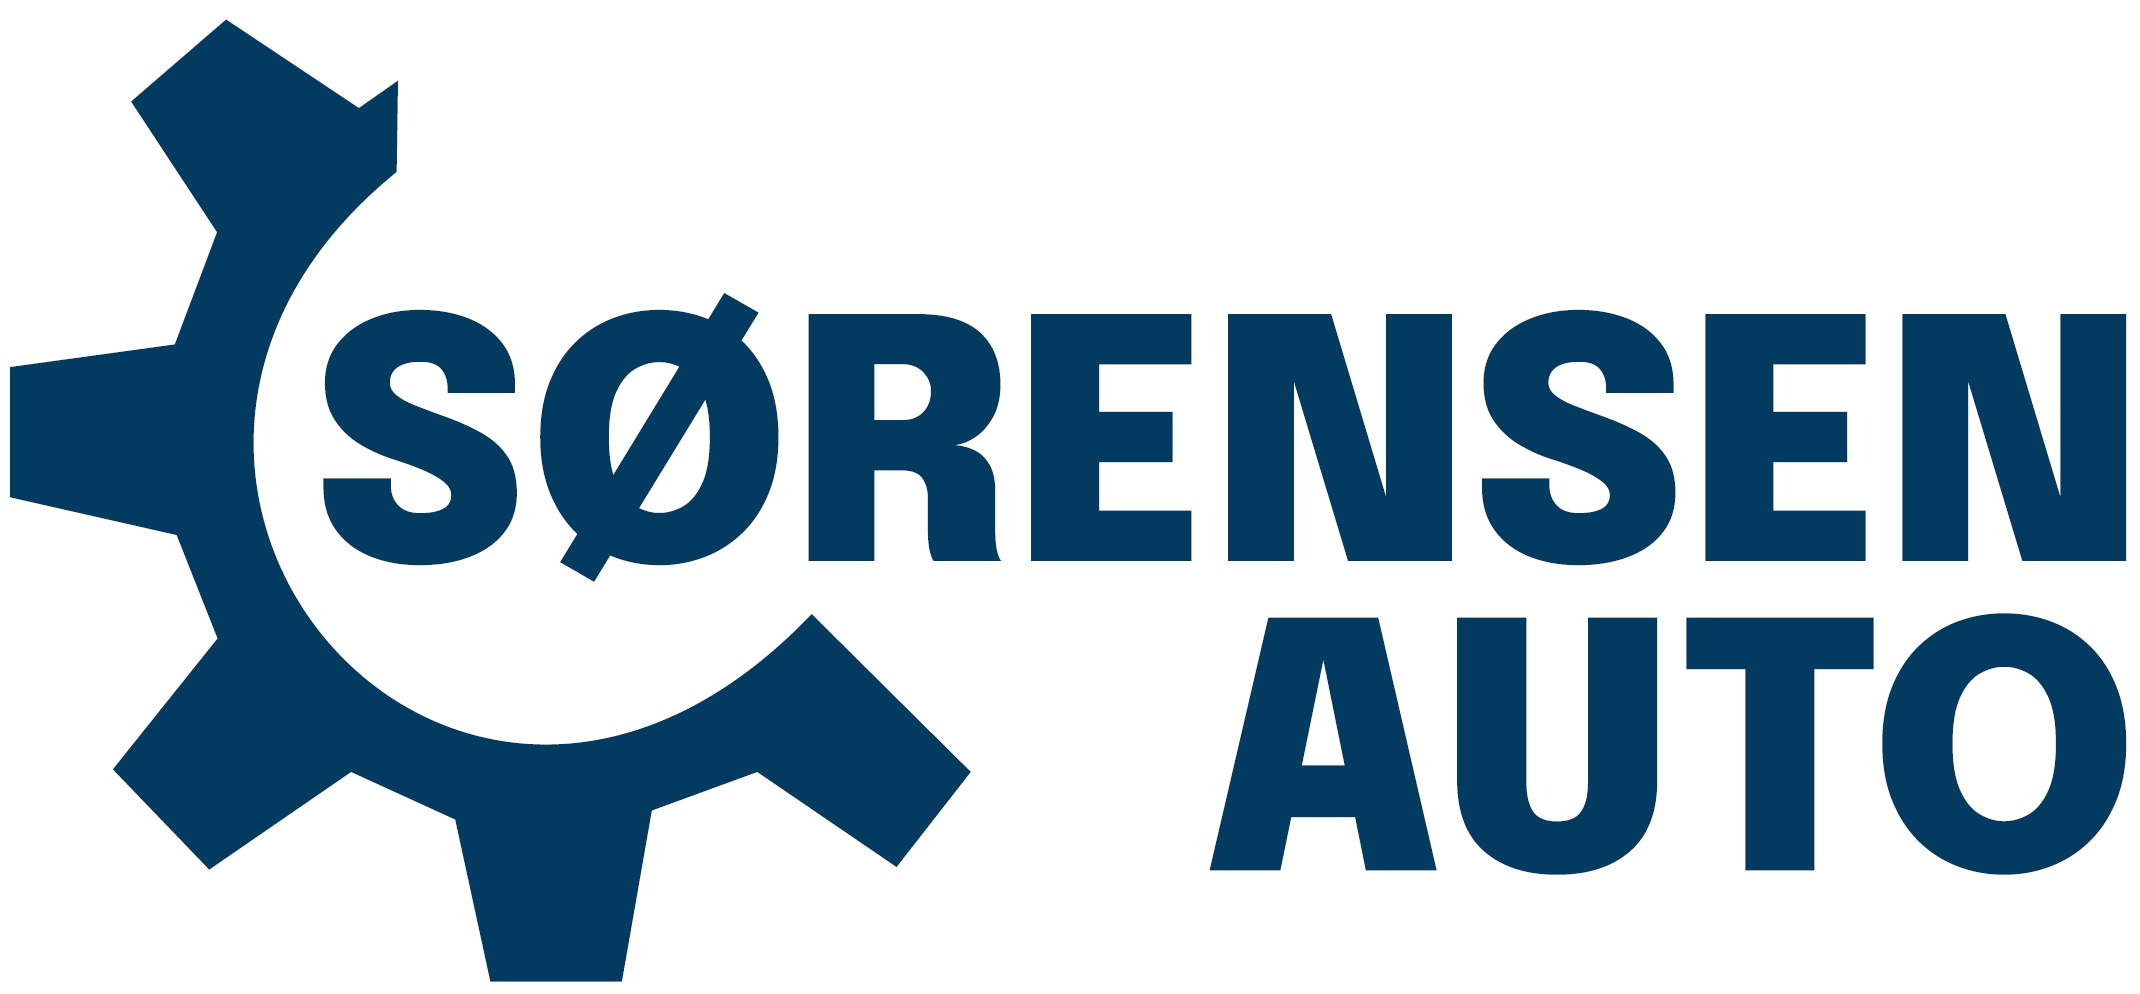 Sørensen Auto - Autoplus logo